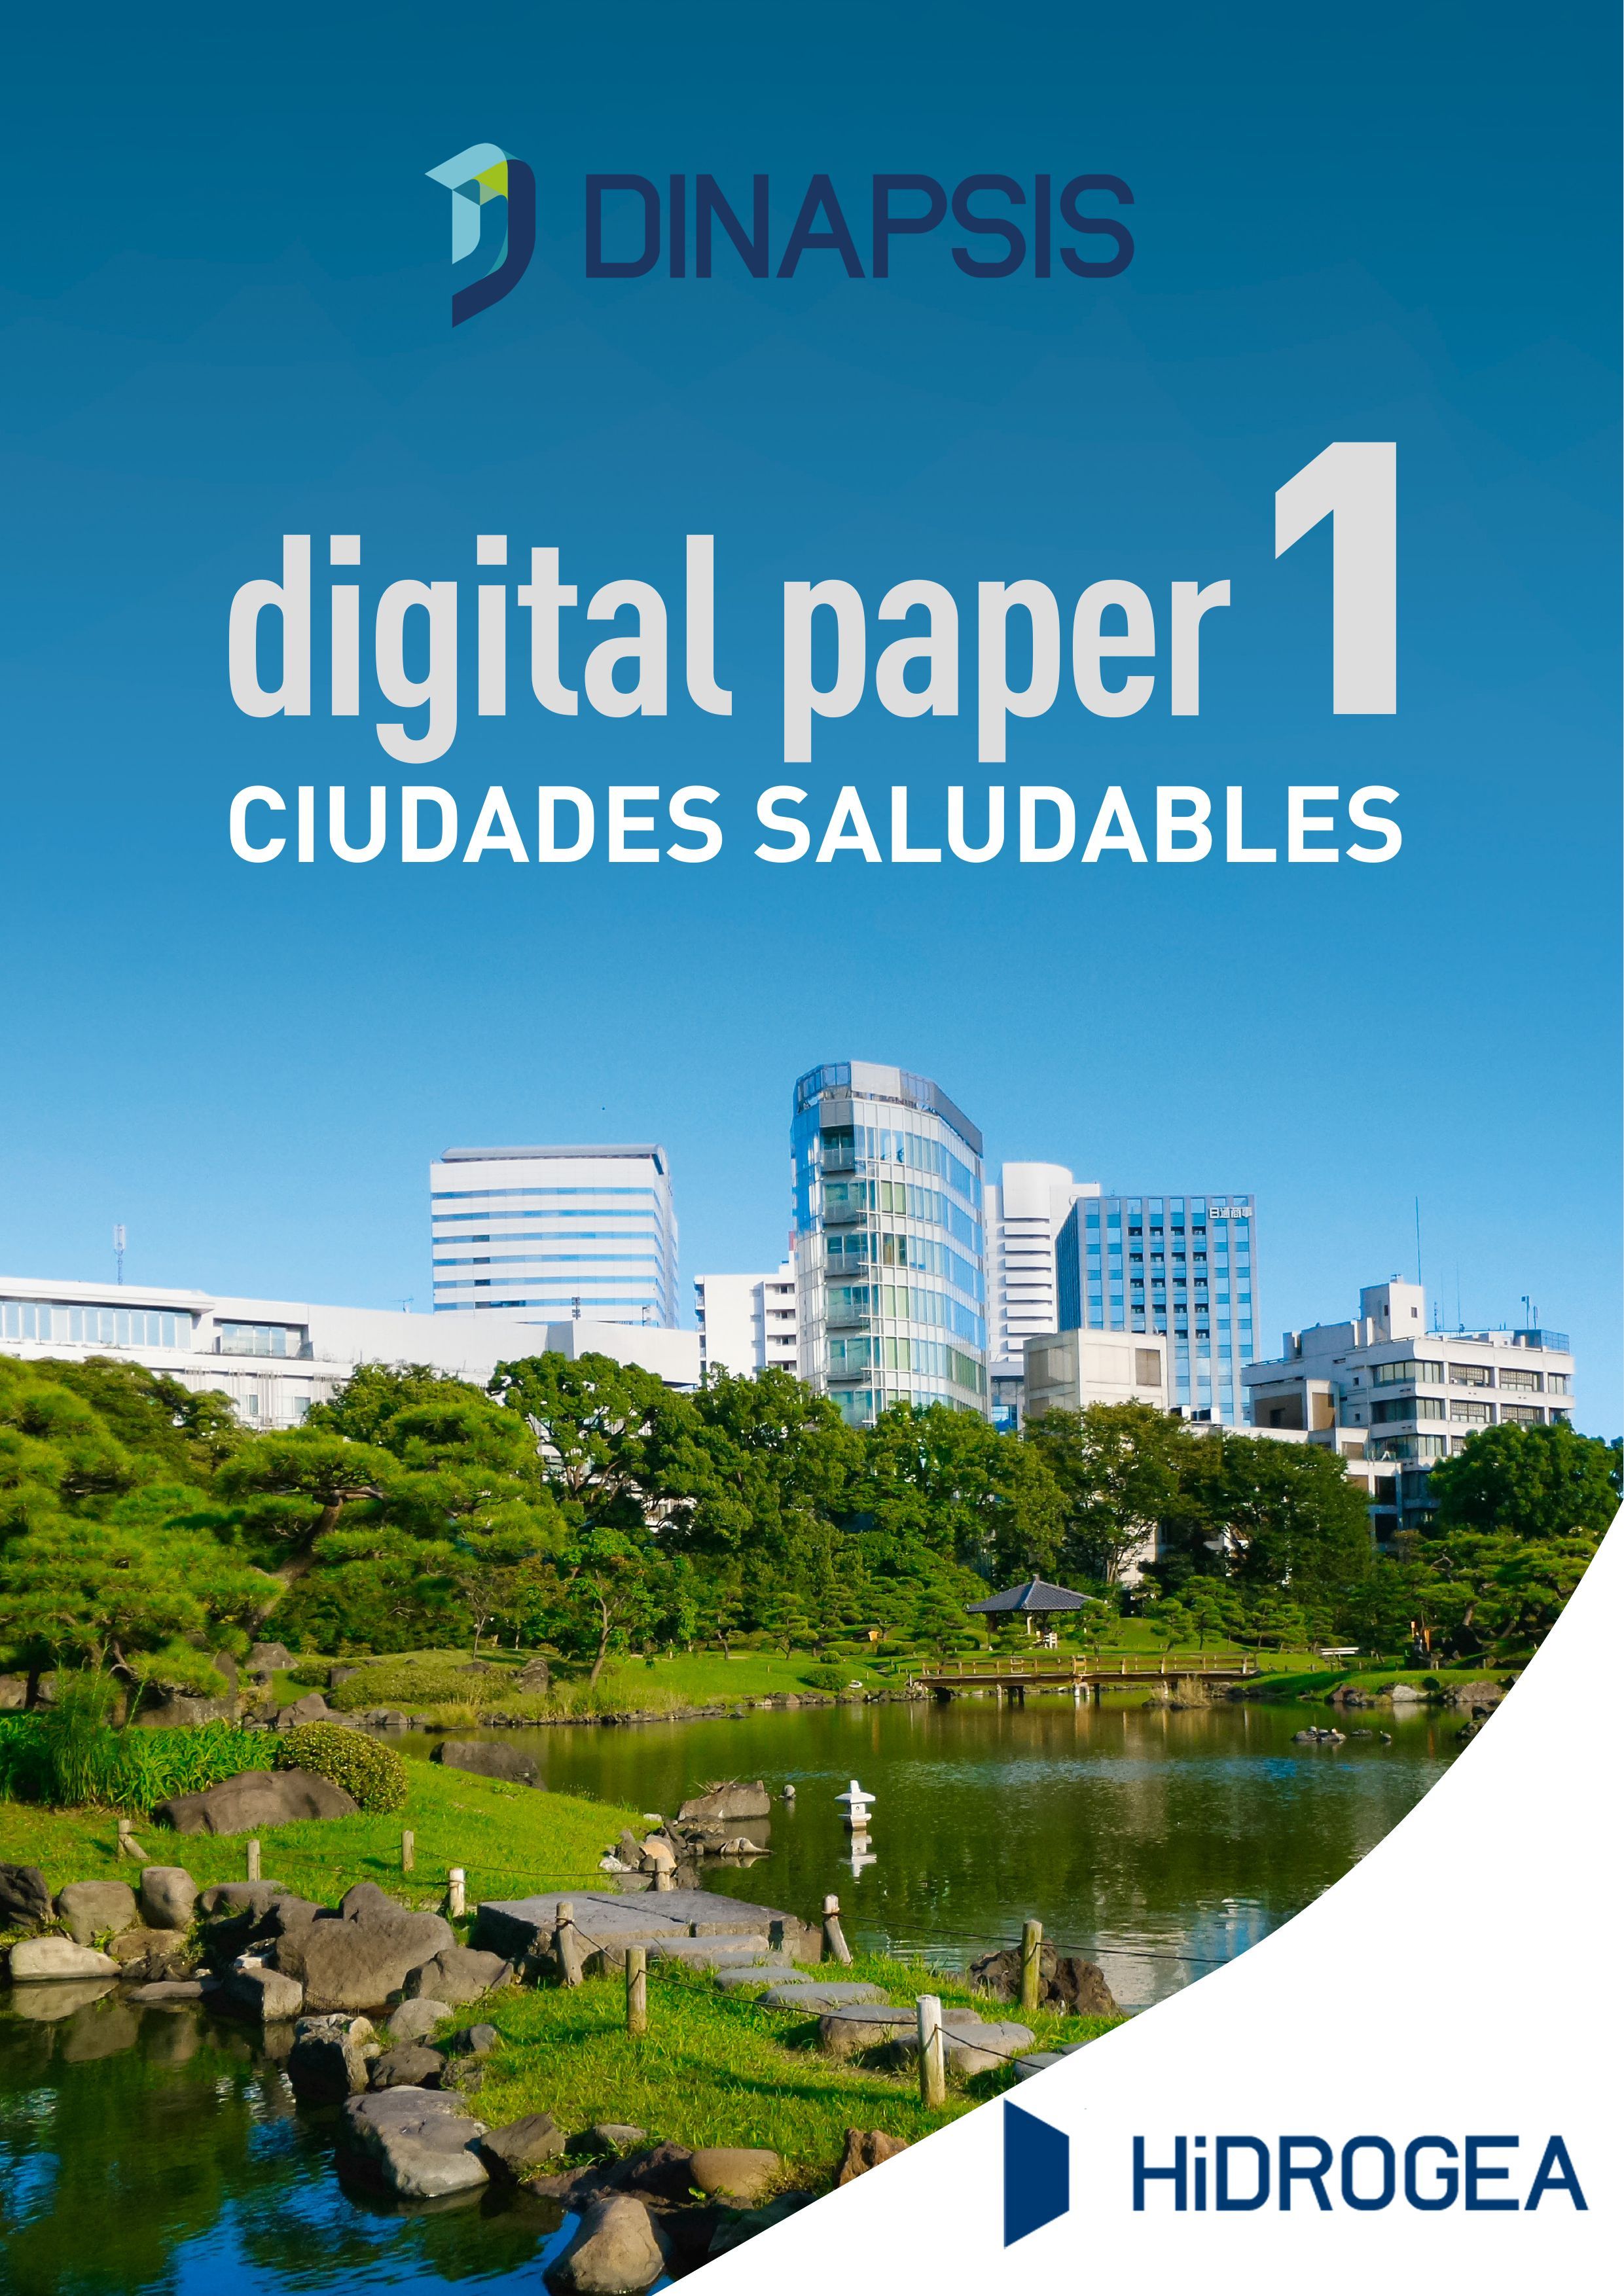 Dinapsis Digital Paper, la revista donde los expertos dan las claves de la transformación digital